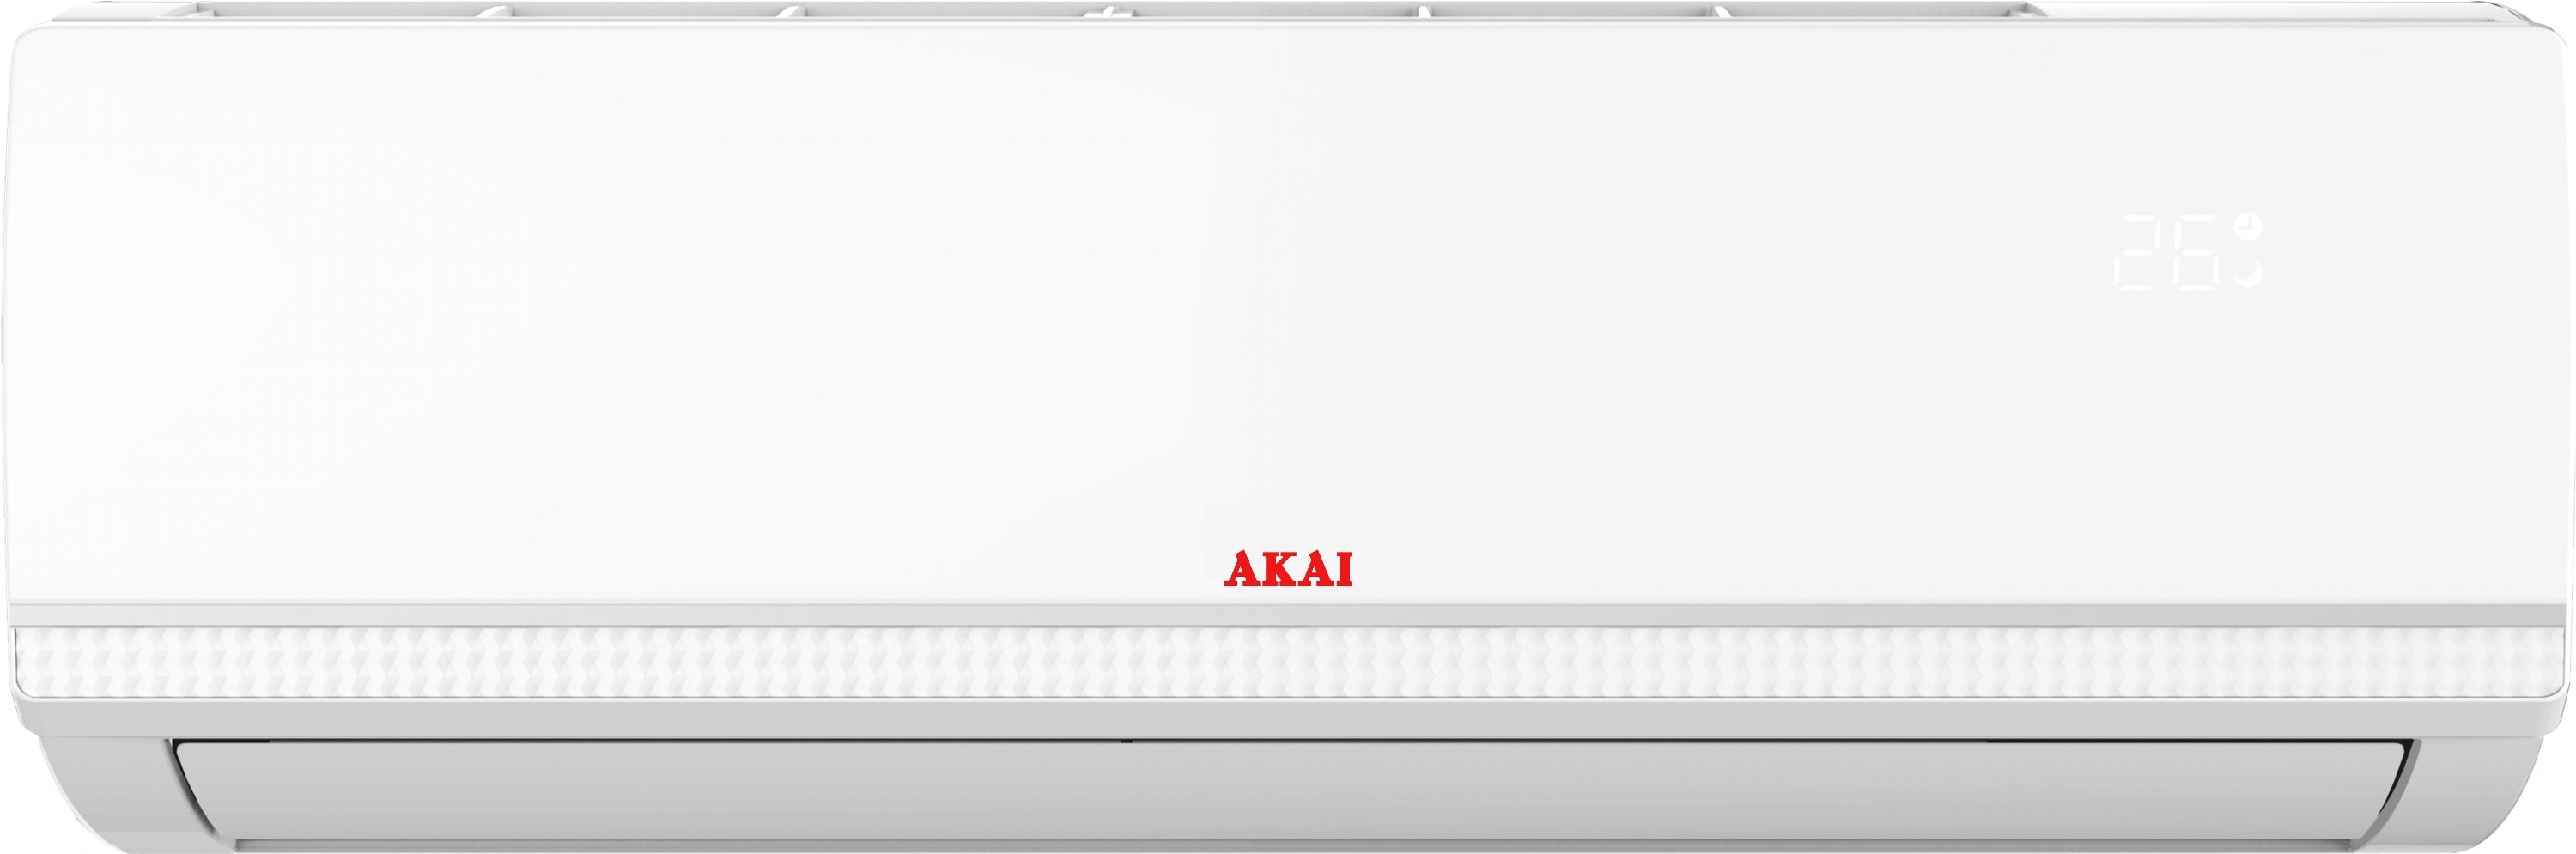 Кондиционер сплит-система Akai AK-AC1210-IN цена 12999.00 грн - фотография 2